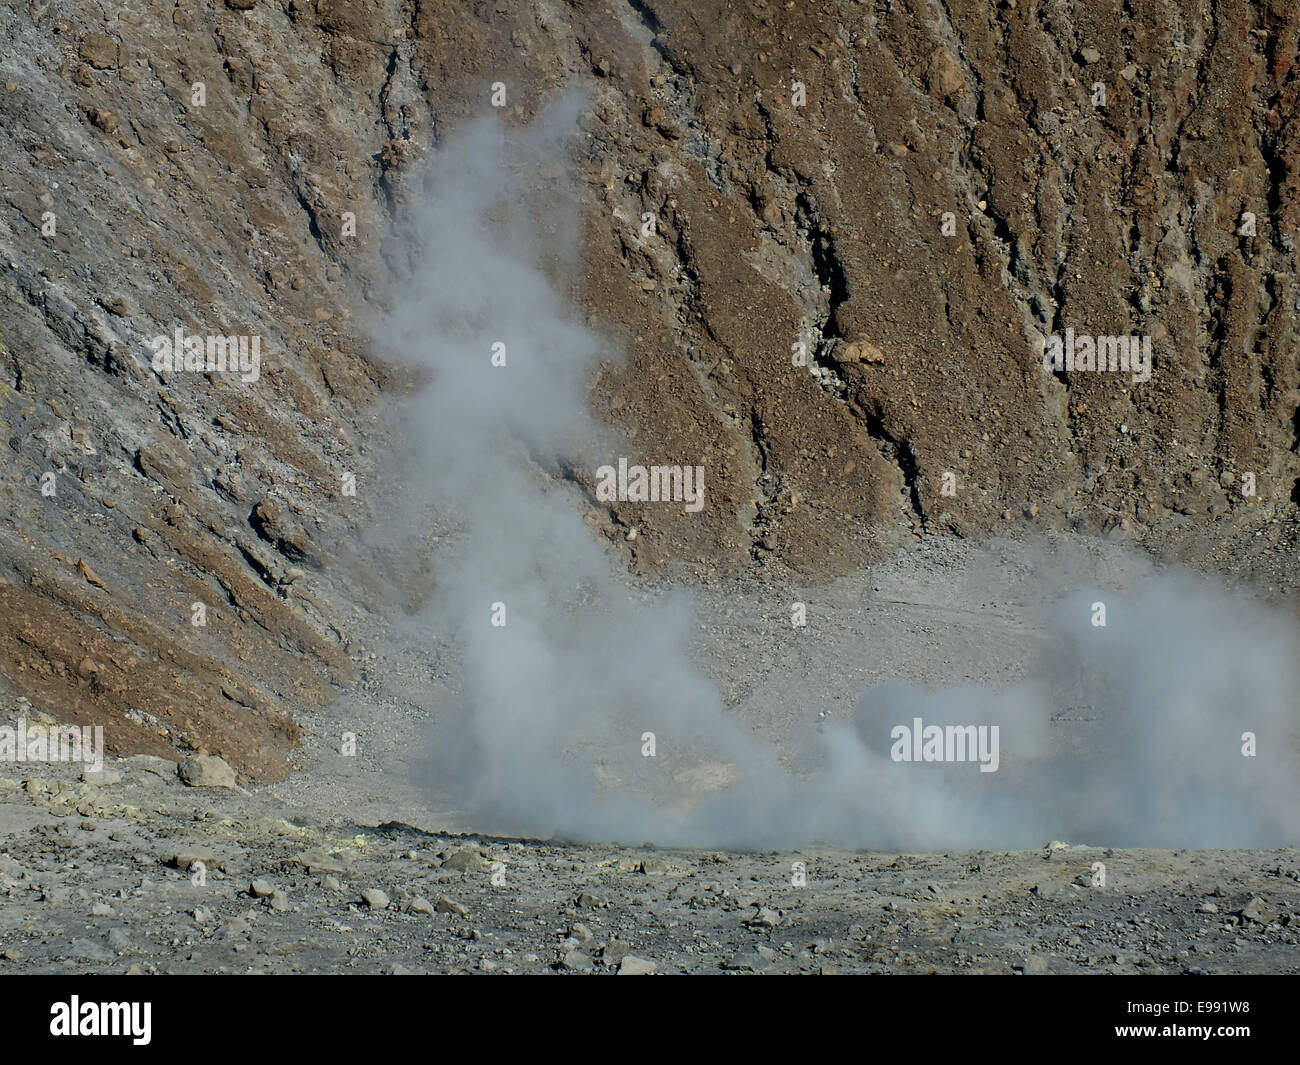 Der Kraterboden des Gran Krater auf der Insel Vulcano ist oft durch den aufsteigenden Dampf bedeckt. Giftige Gase können den Aufenthalt in den Krater gefährlich machen. -Juni 2014 Stockfoto